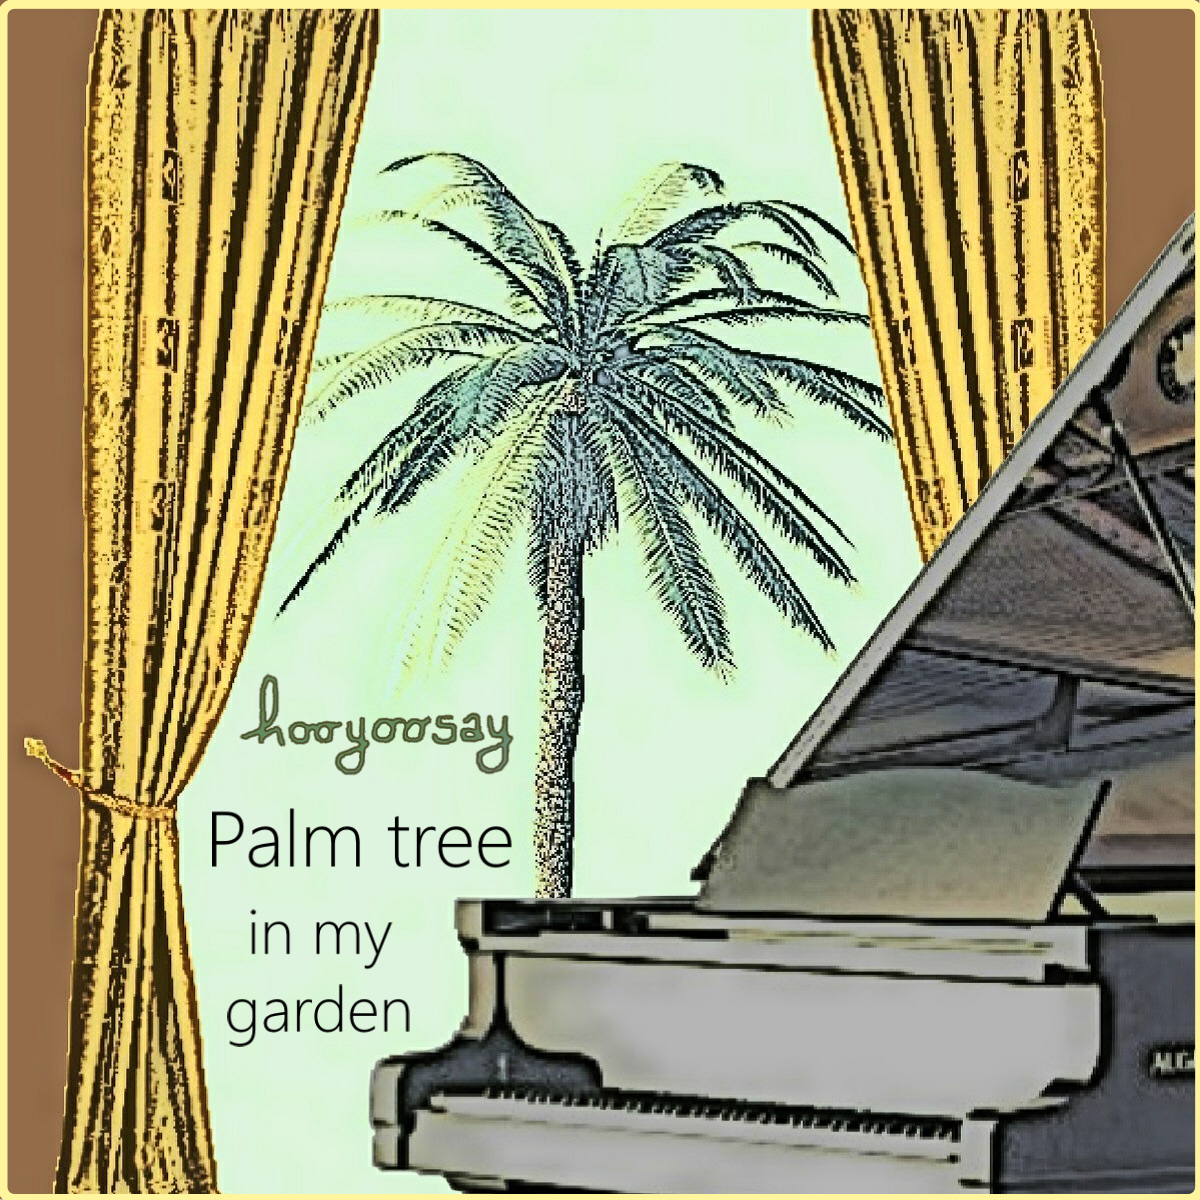  Hooyoosay – “Palm Tree In My Garden”